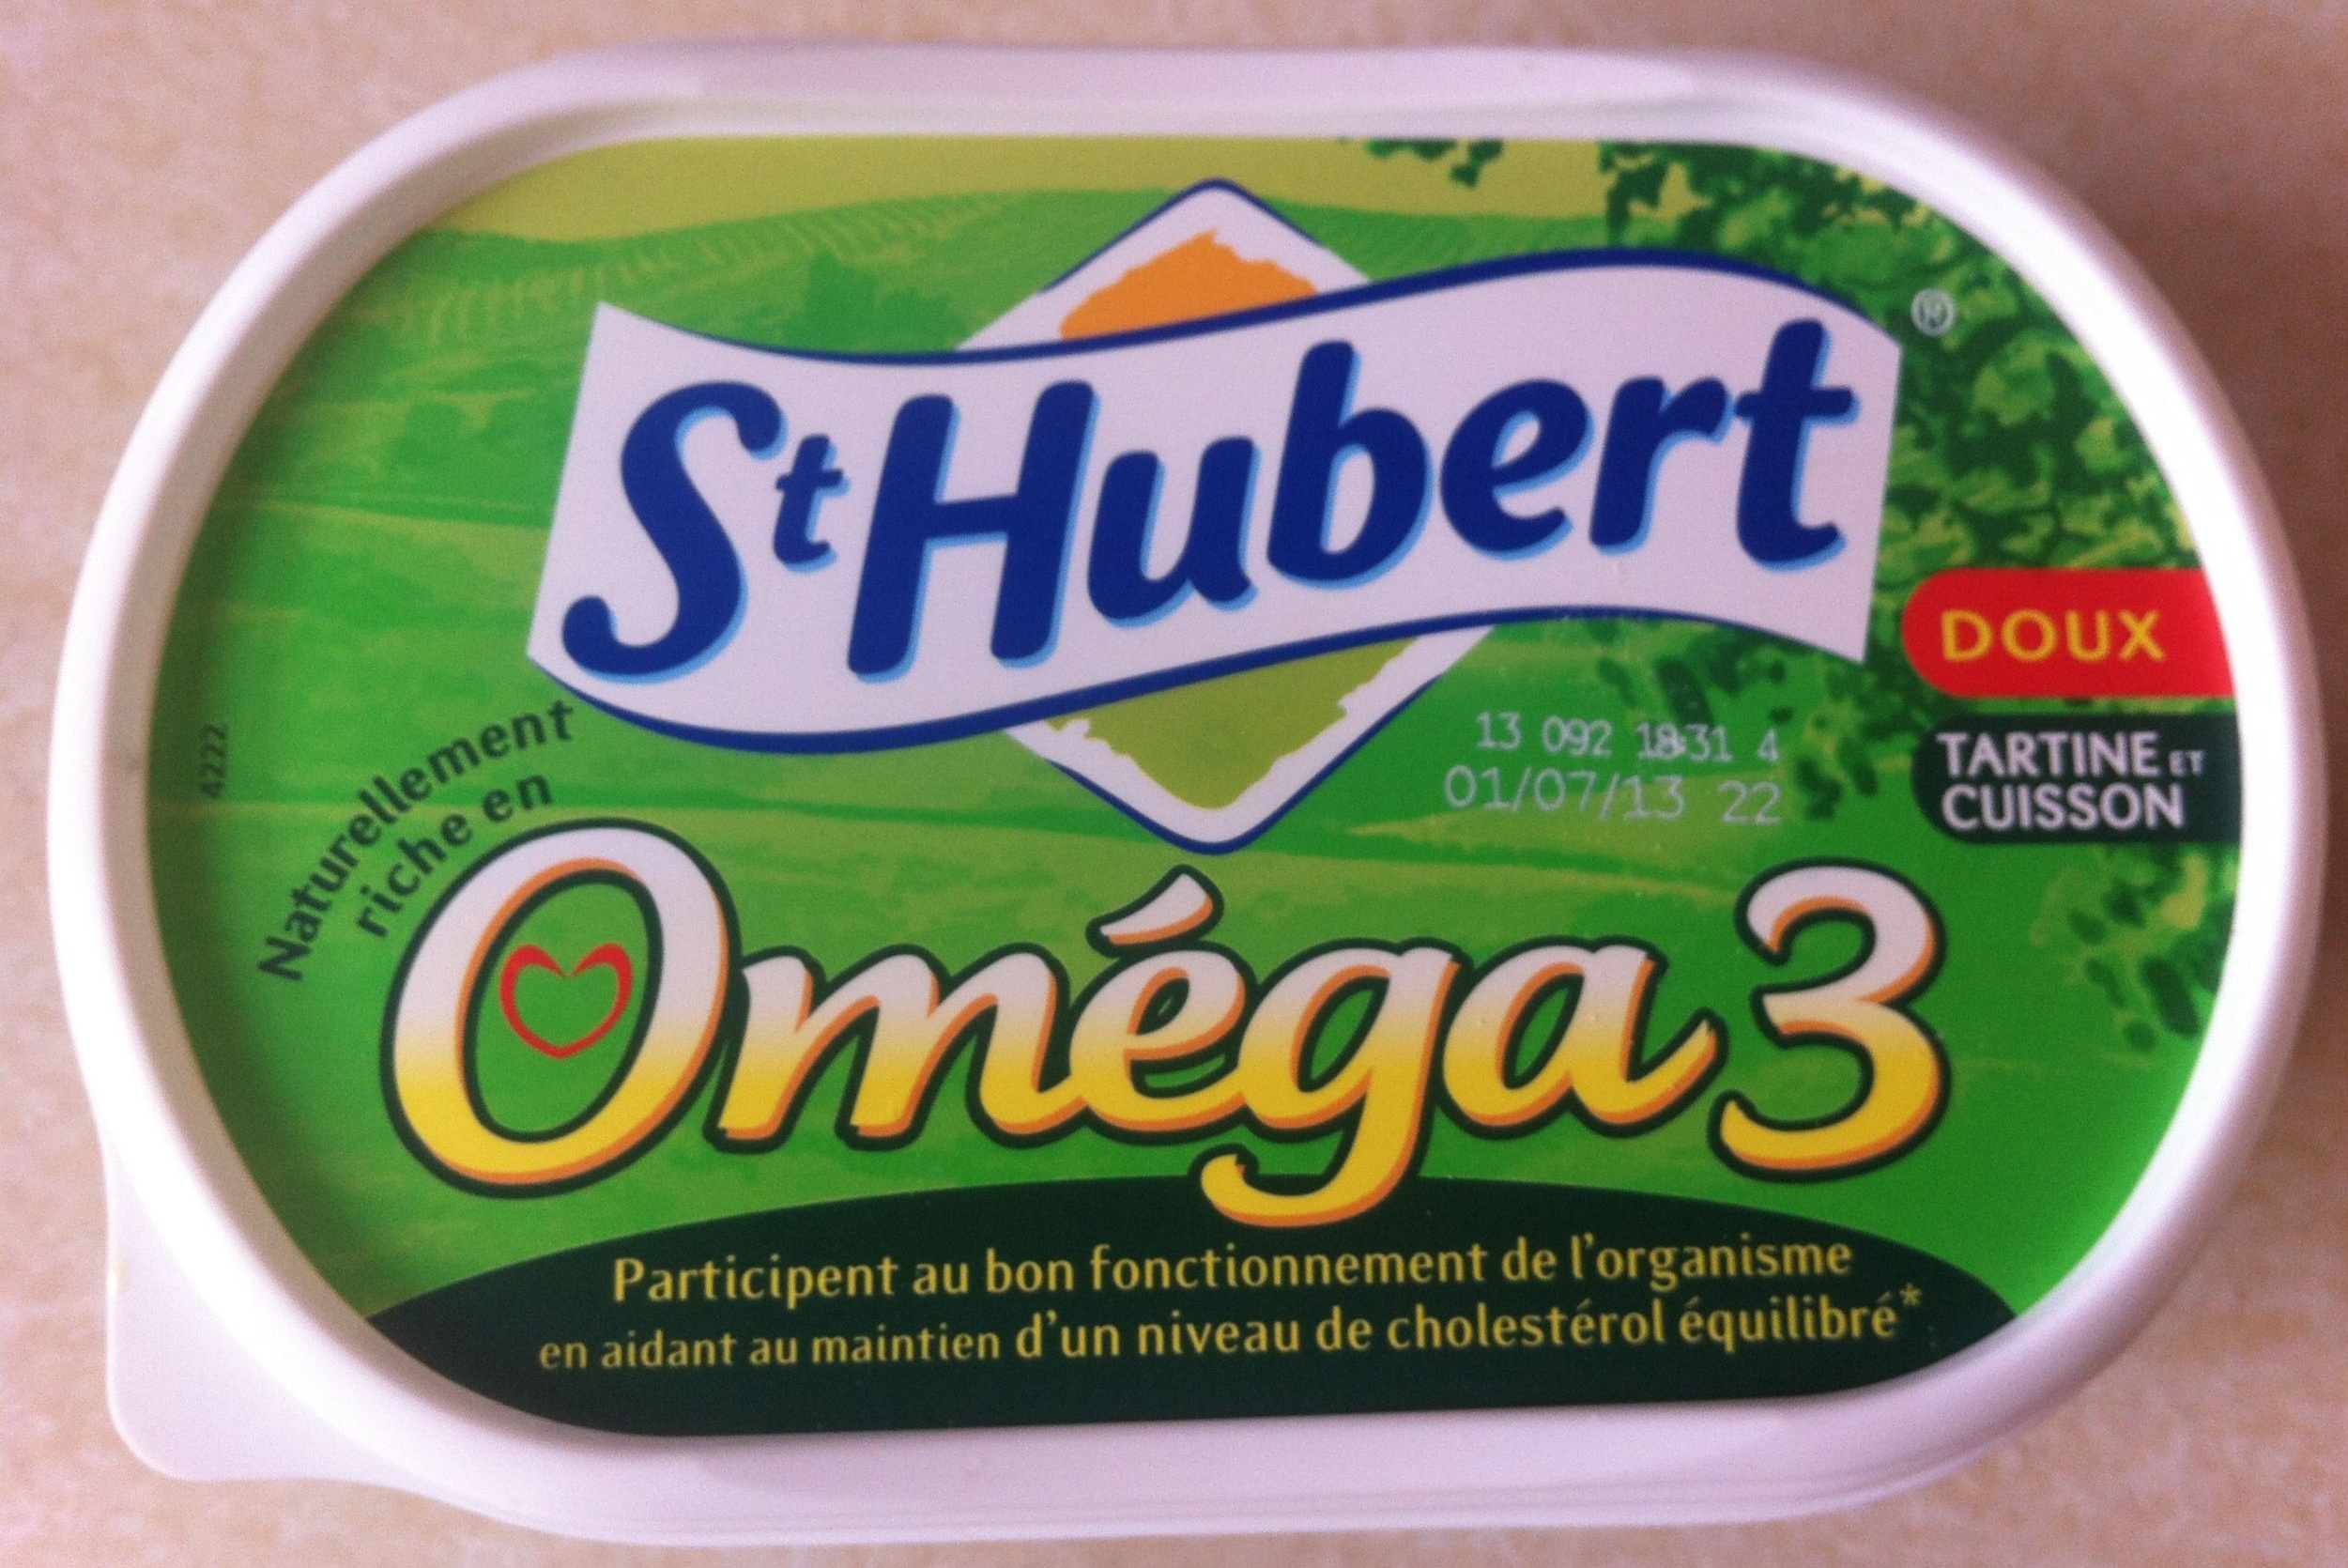 St Hubert Oméga 3 (Doux, Tartine et Cuisson), (54 % MG) - Produkt - fr